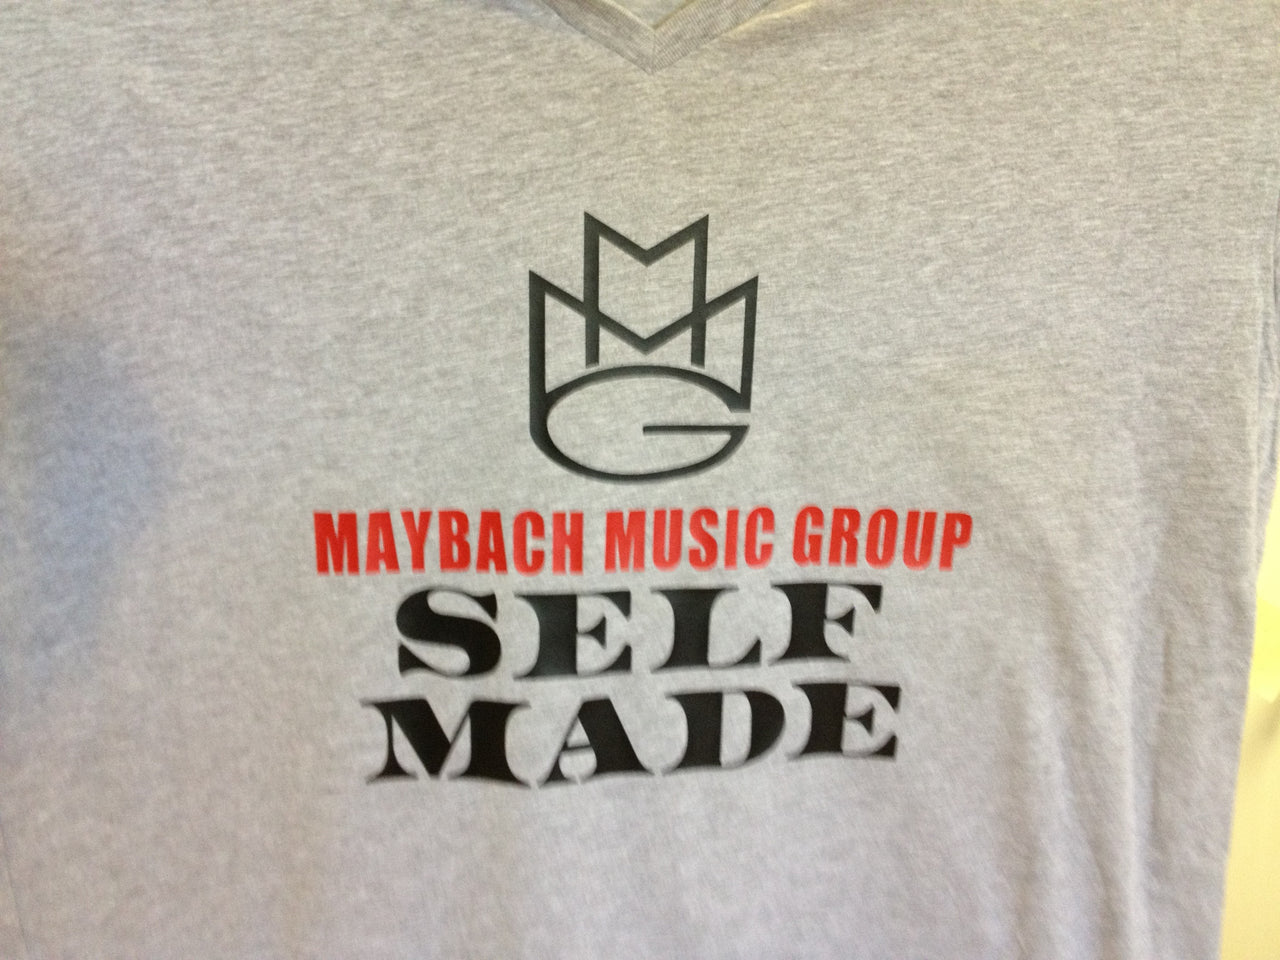 Maybach Music Group "Self Made" V-Neck Tshirt - TshirtNow.net - 7